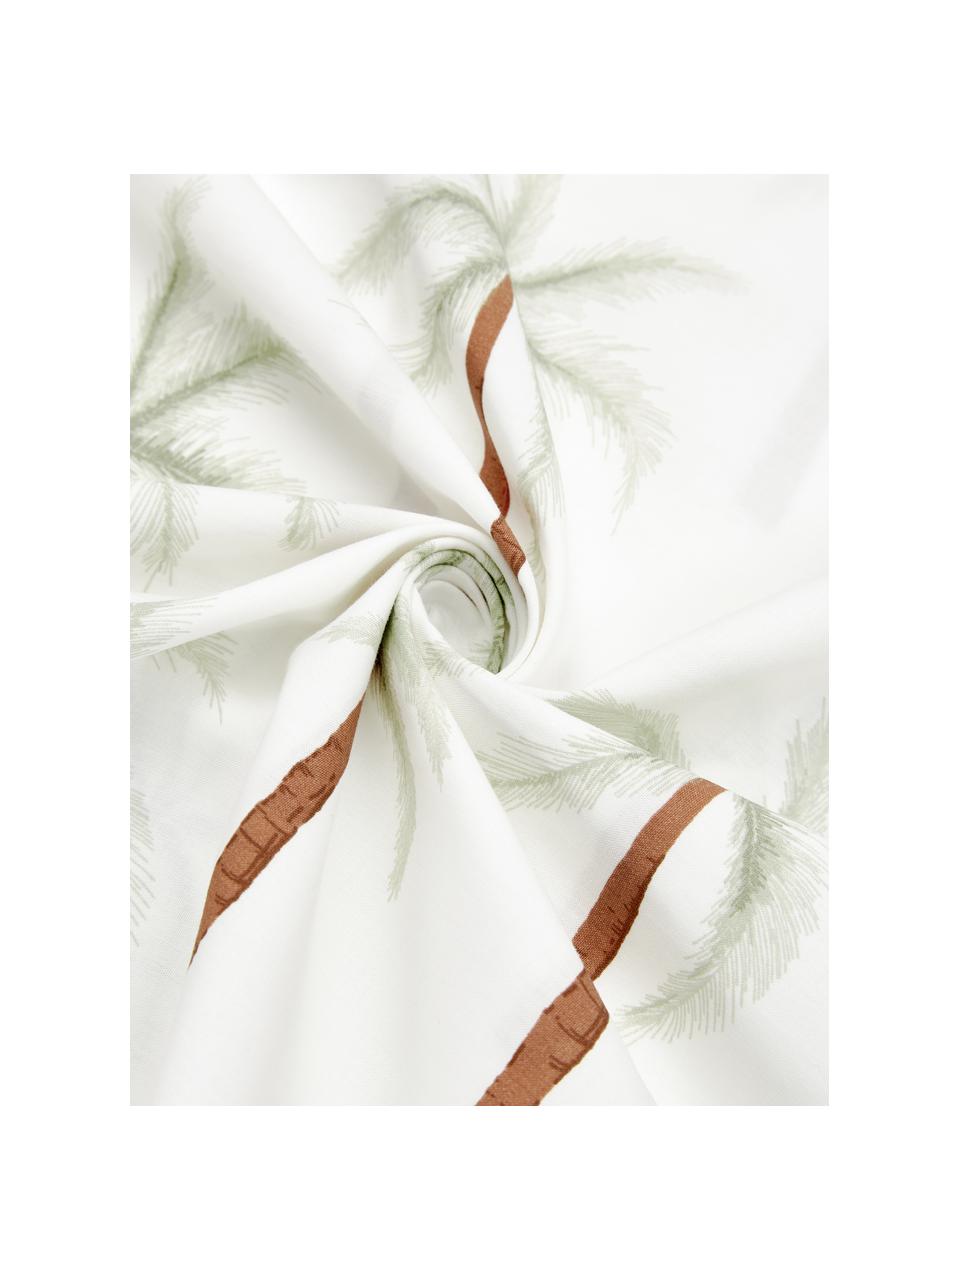 Parure copripiumino in cotone percalle organico con stampa tropicale Martha, Tessuto: percalle Densità di tessi, Bianco con stampa tropicale, 200 x 200 cm + 2 federe 80 x 80 cm